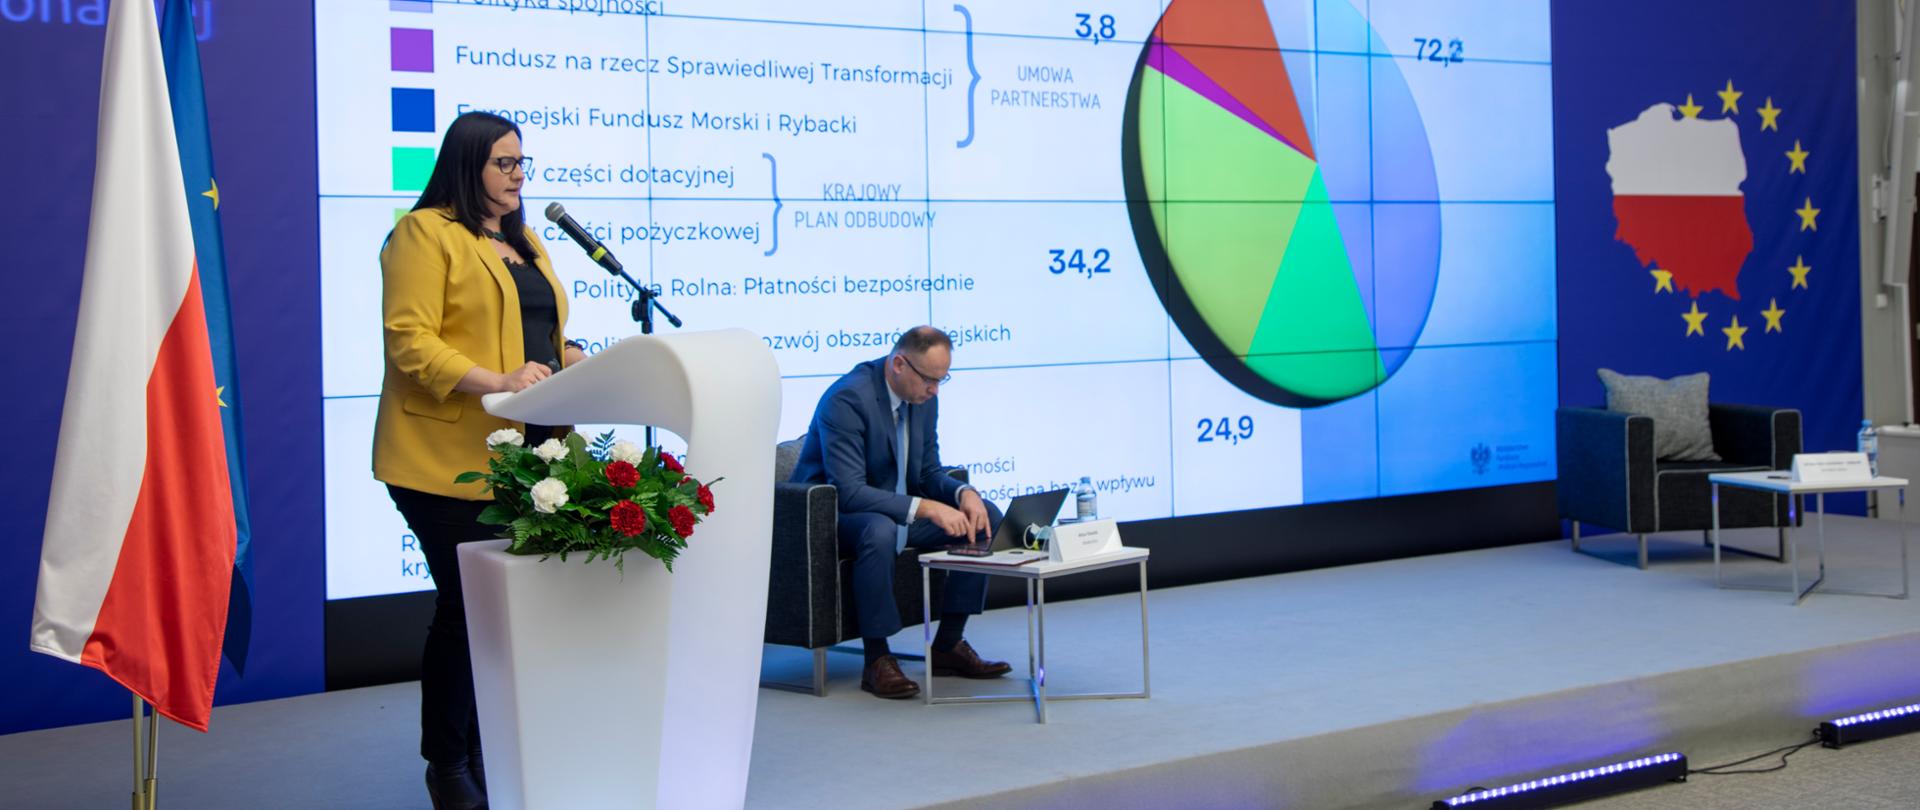 Na zdjęciu stoi przy mównicy wiceminister Małgorzata Jarosińska-Jedynak, po lewej stronie flaga Polski i Unii Europejskiej, w tle jasny monitor z wyświetlonym slajdem, po prawej stronie niebieski baner z konturową mapą Polski i napisem "Umowa Partnerstwa na lata 2021-2027".